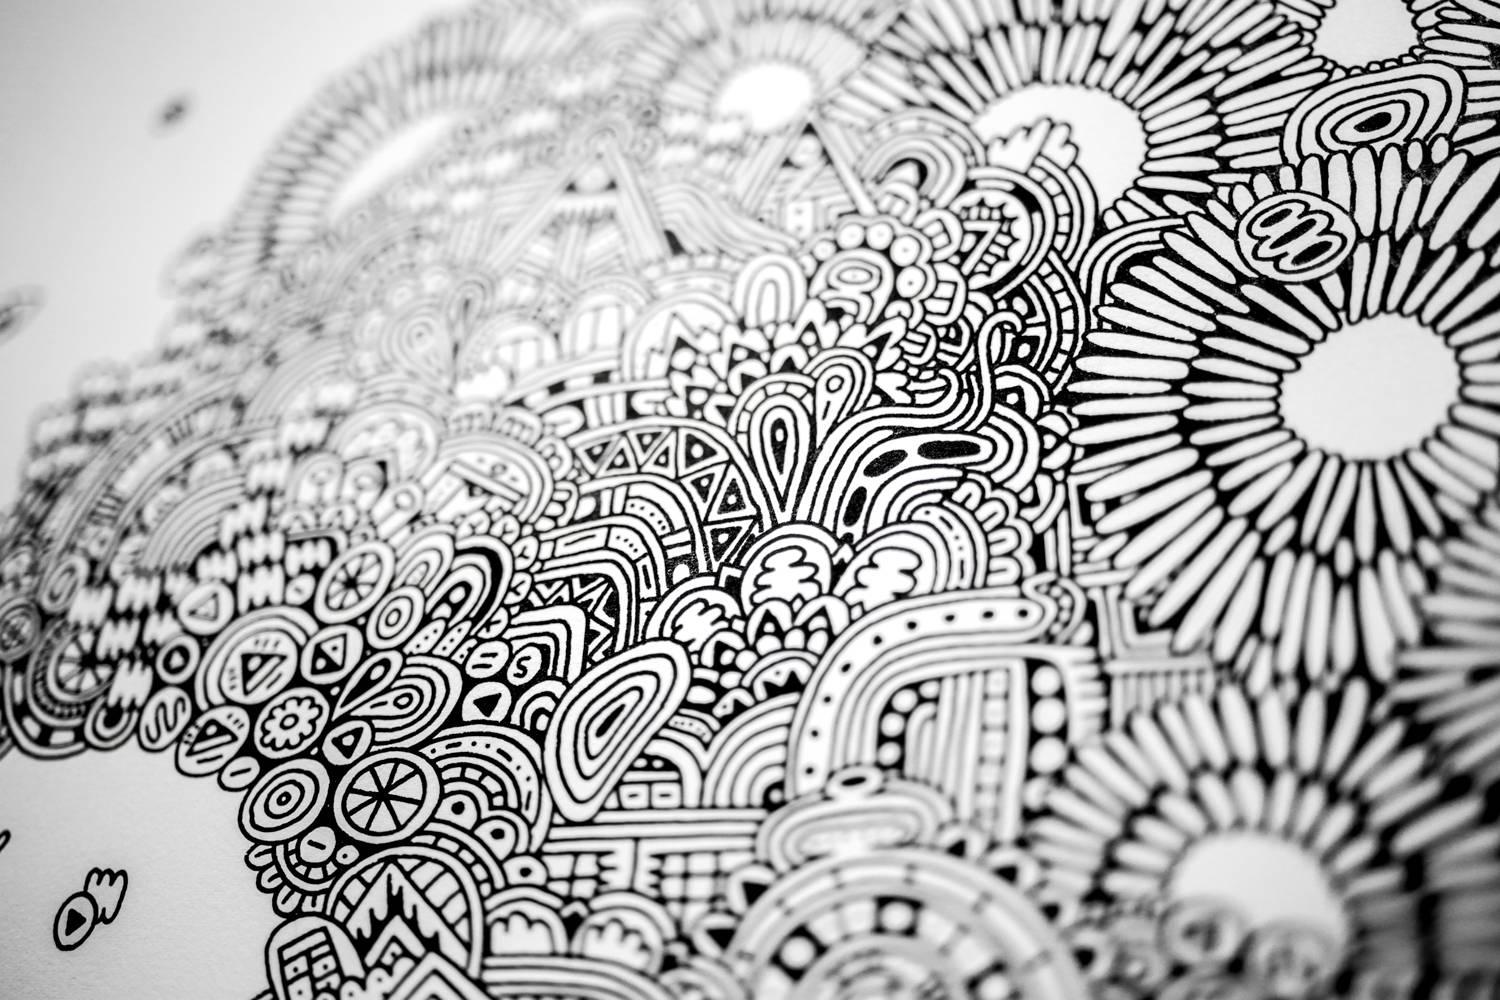 Original 30in x 20in Zeichnung auf Papier montiert auf Holzplatte von Austin-basierte Texas Künstler Sophie Roach.

Sophie Roach ist eine autodidaktische Künstlerin und Illustratorin mit Sitz in Austin, TX. Sie entdeckte ihre Leidenschaft für das